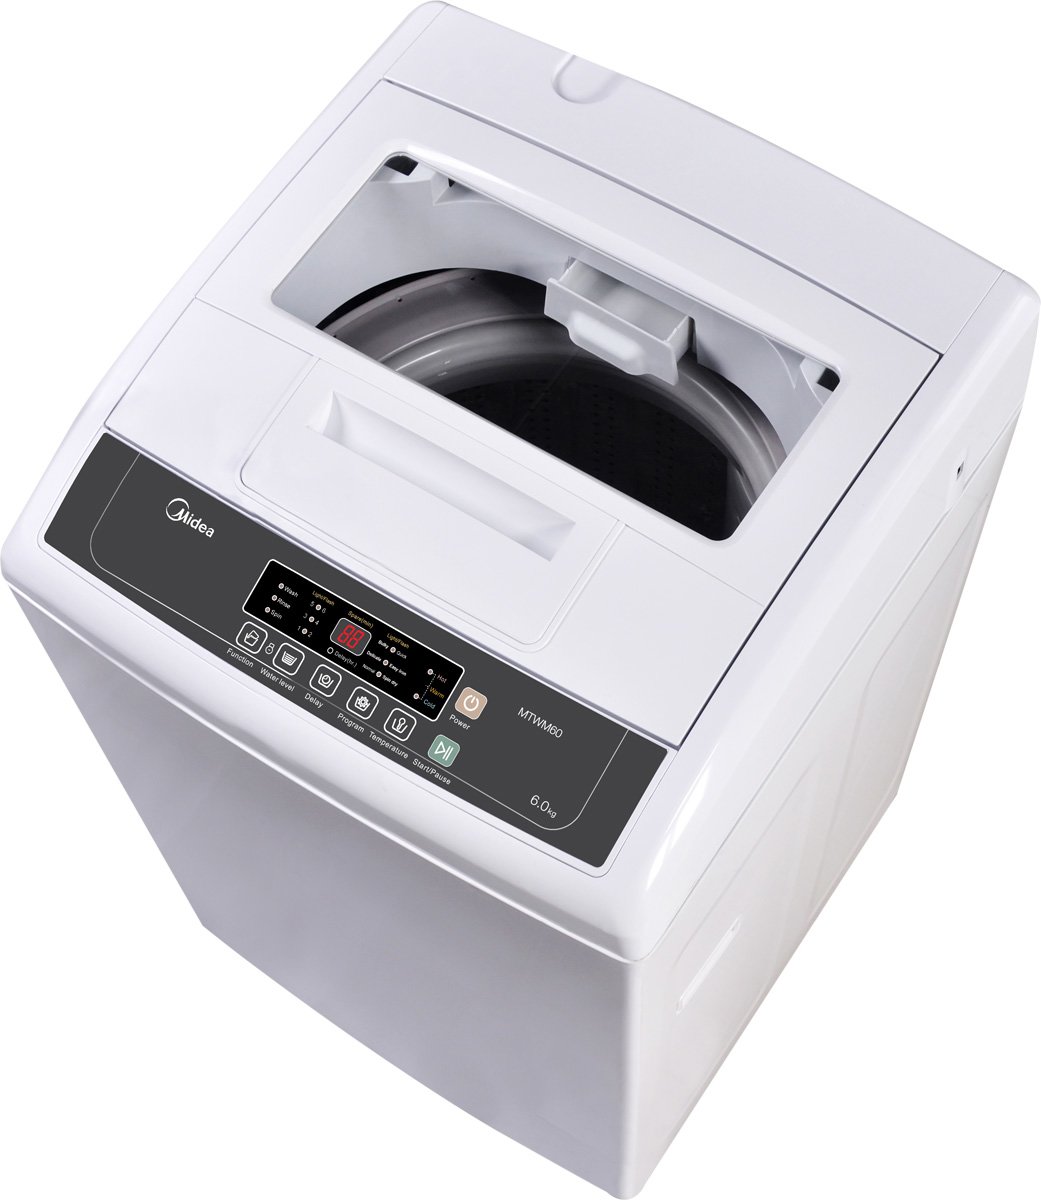 Midea MTWM60 6kg Top Load Washing Machine Reviews Appliances Online